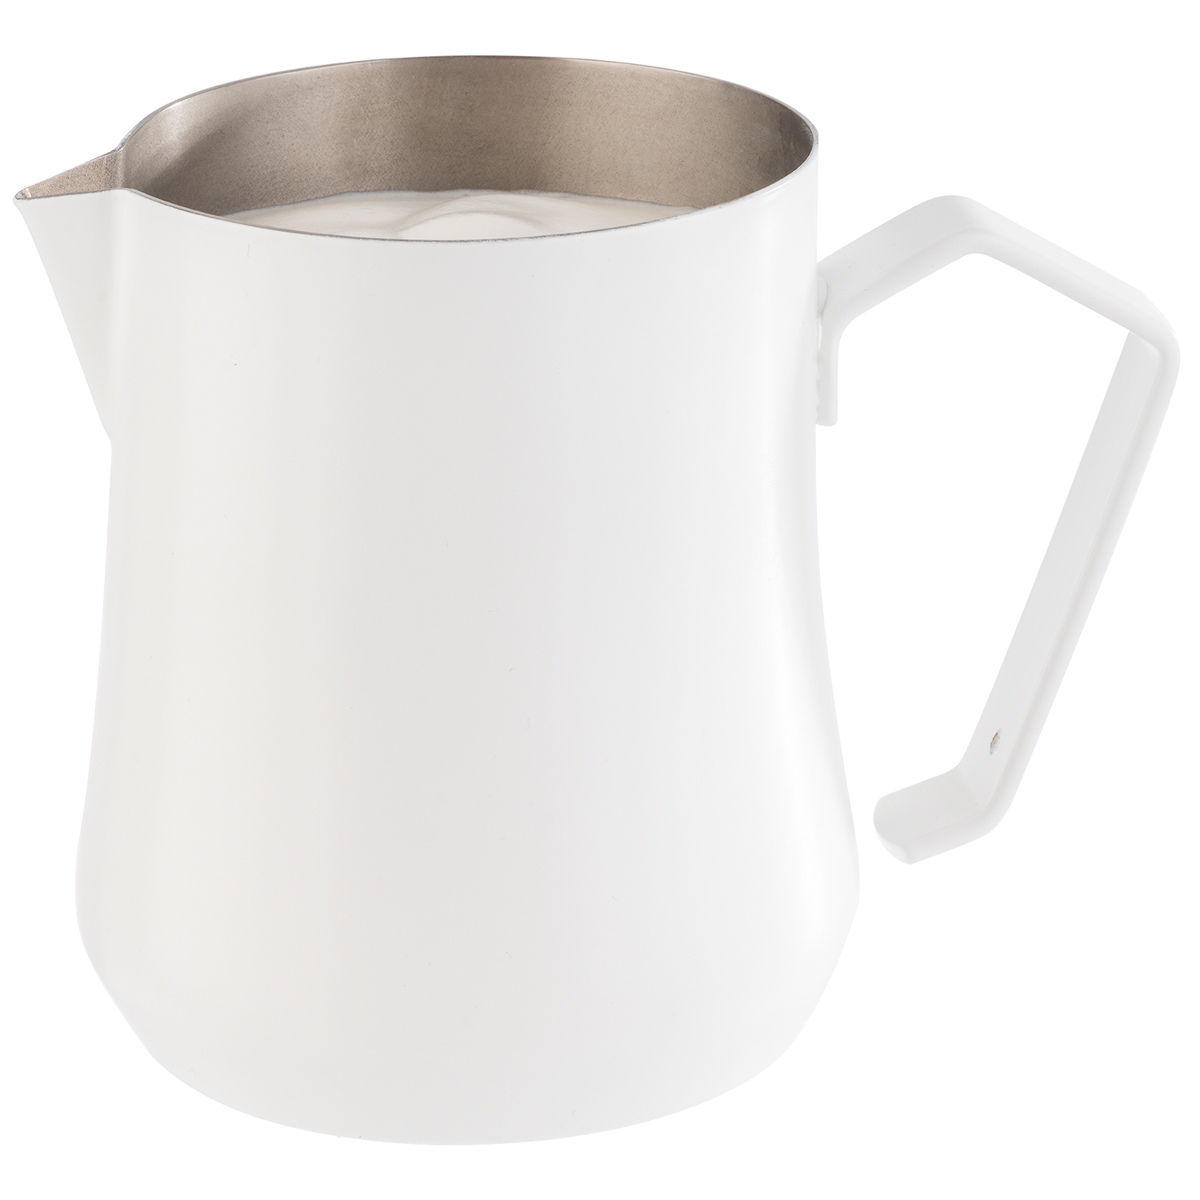 Milch- / Universalkanne, Ø 9 cm, H: 10 cm, 18/10 Edelstahl, weiß, pulverbeschichtet, 0,5 Liter